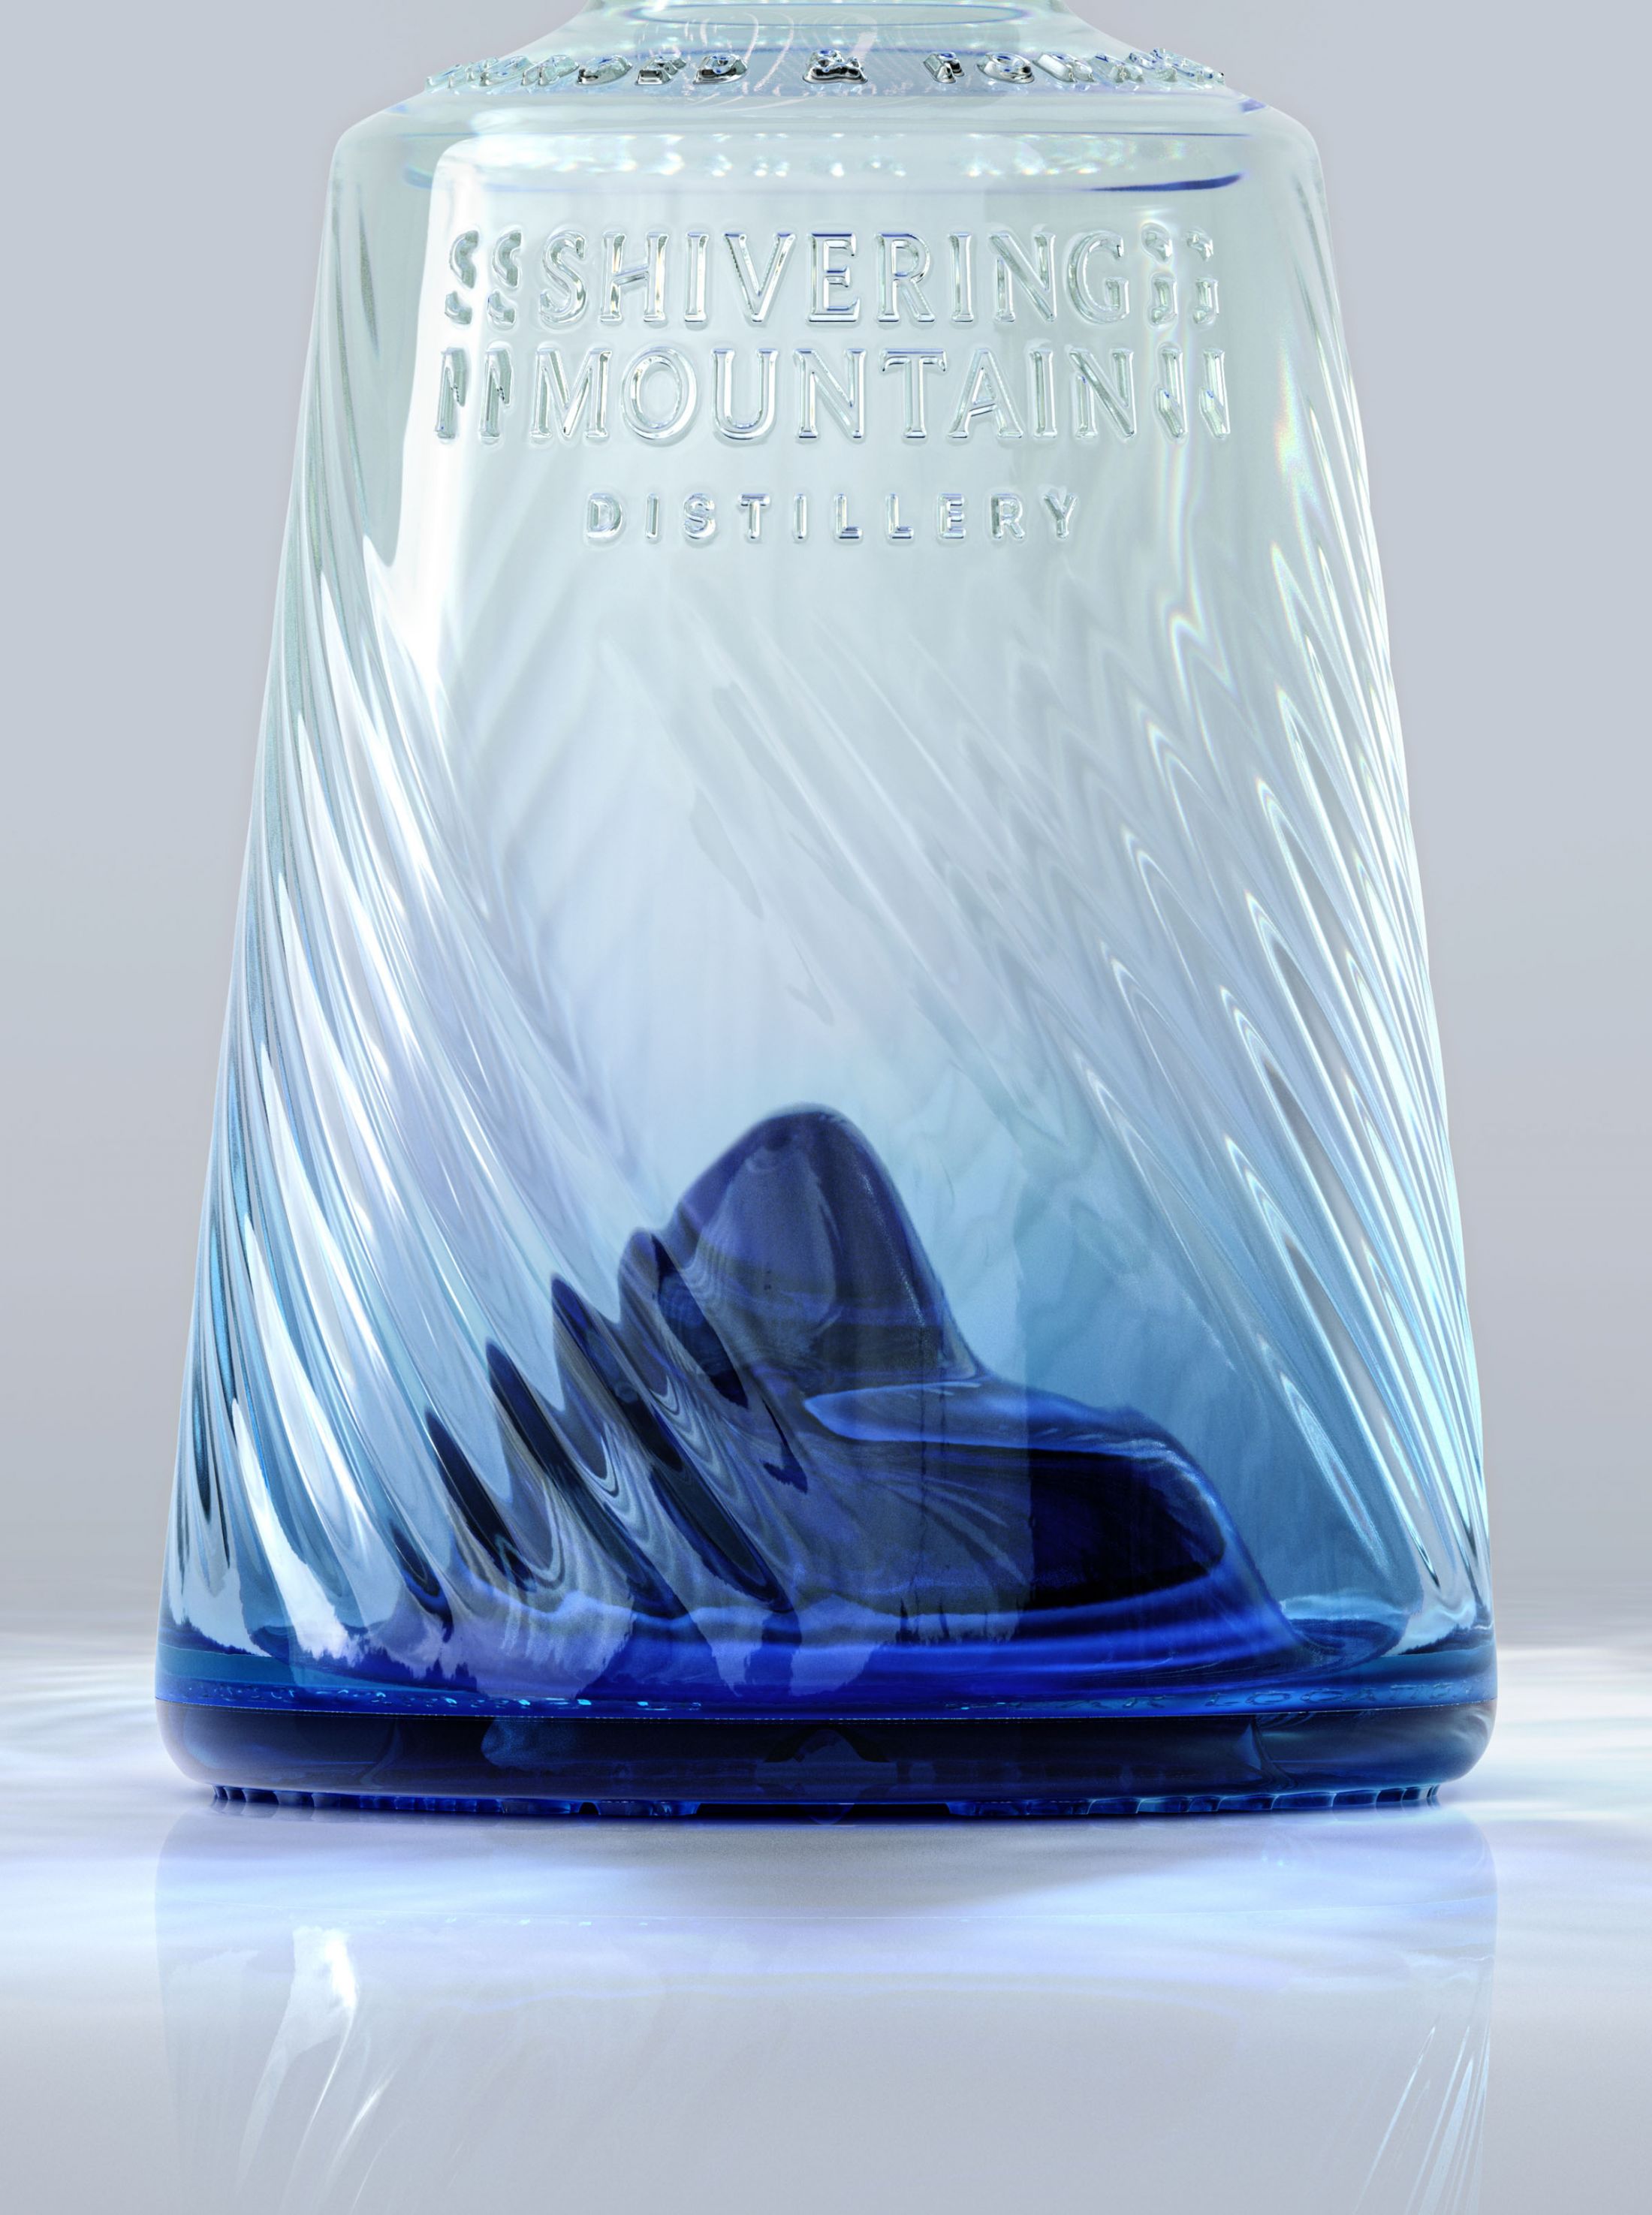 L'incroyable design et l'histoire de la bouteille de gin Shivering Mountain